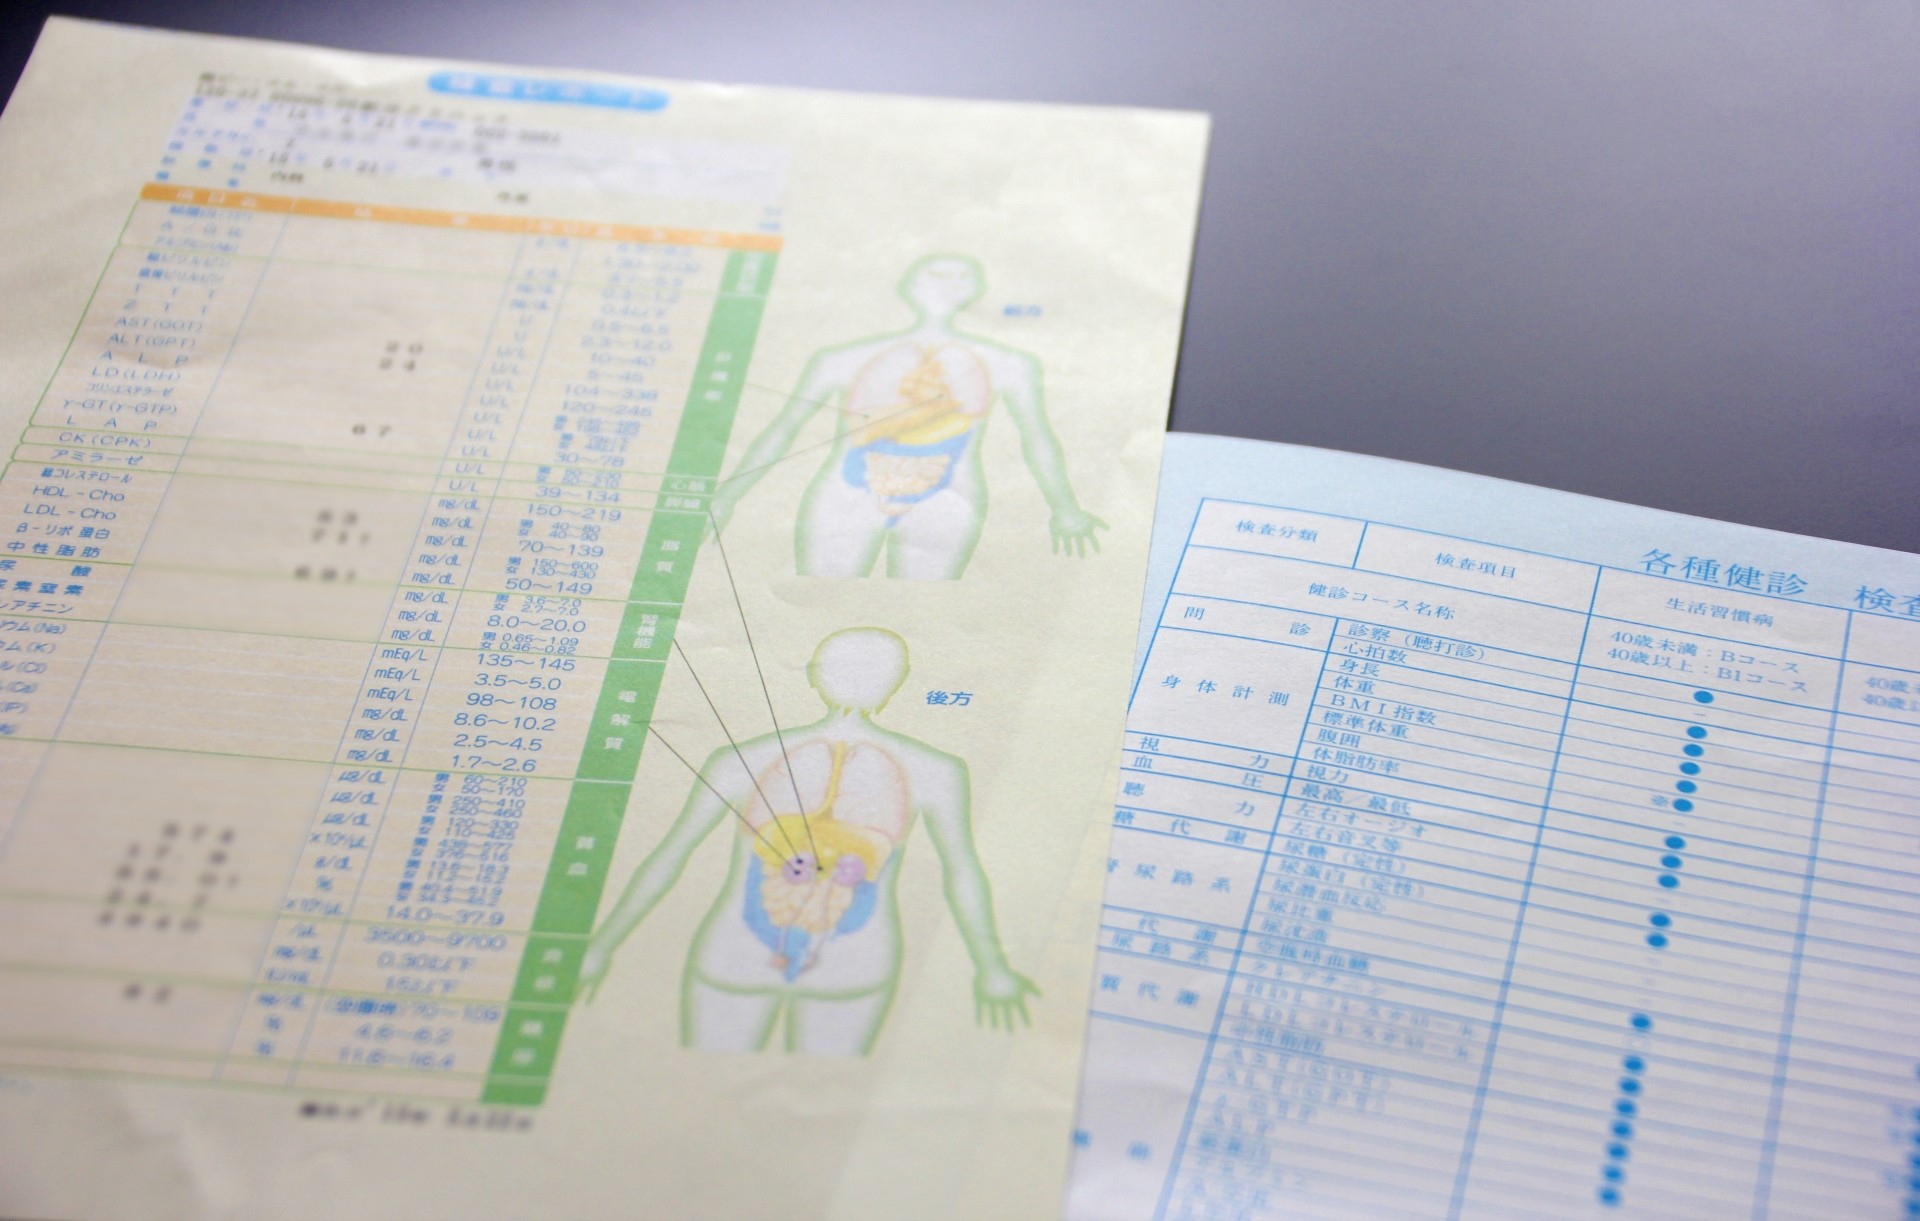 日本人の健康状態を考える：健康診断結果と問題視される結核